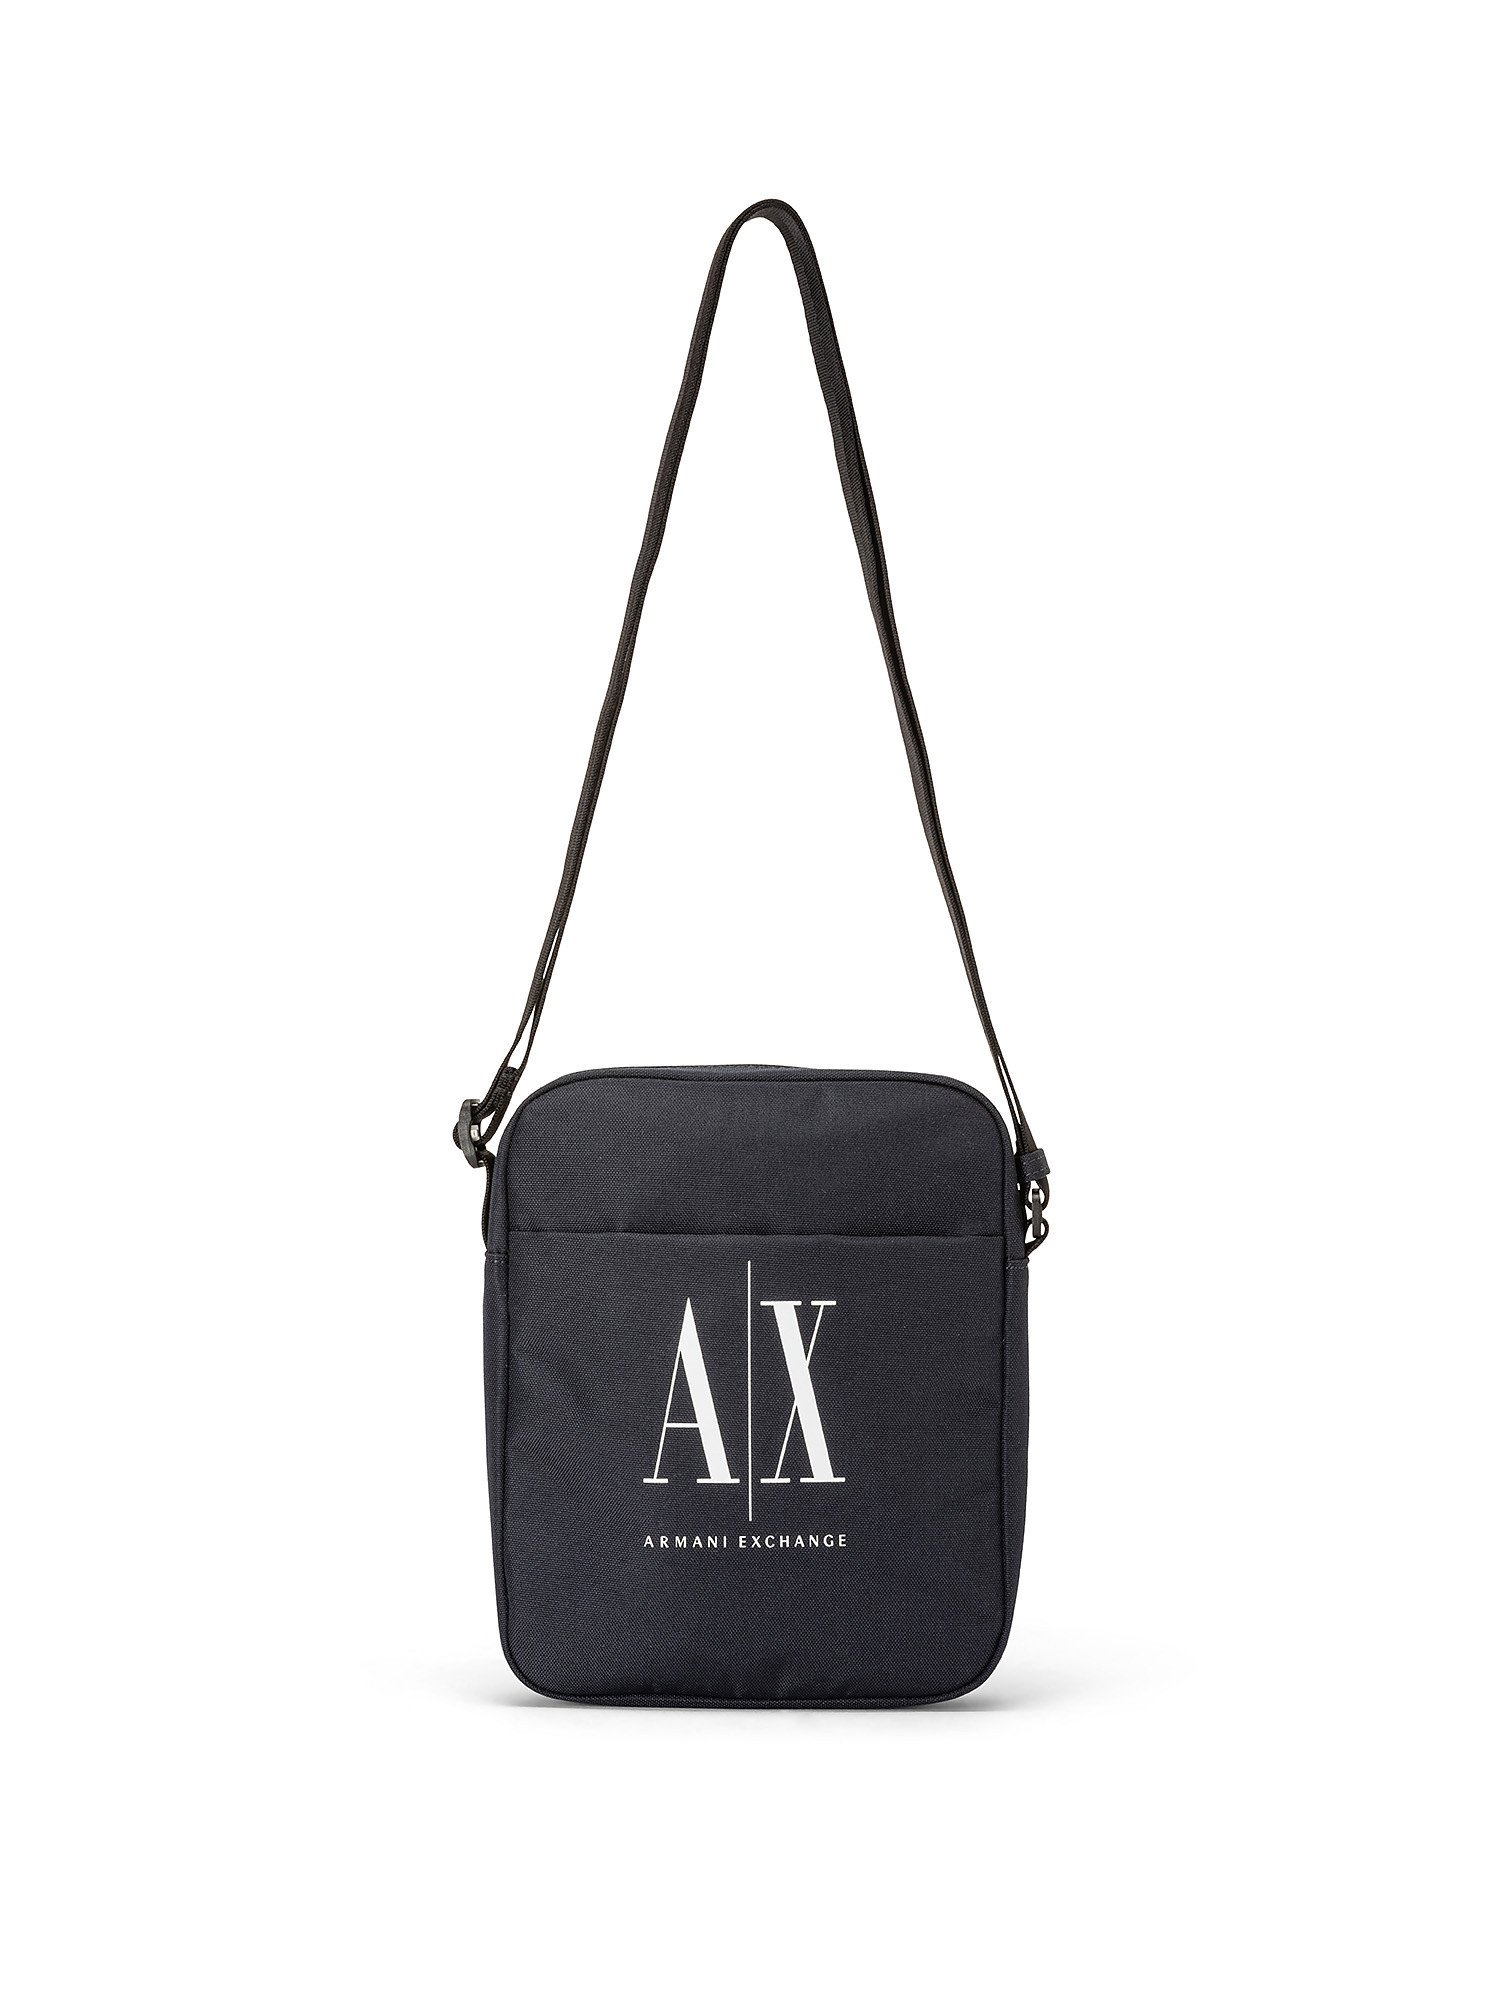 Armani Exchange - Nylon shoulder bag with contrasting logo, Dark Blue, large image number 0